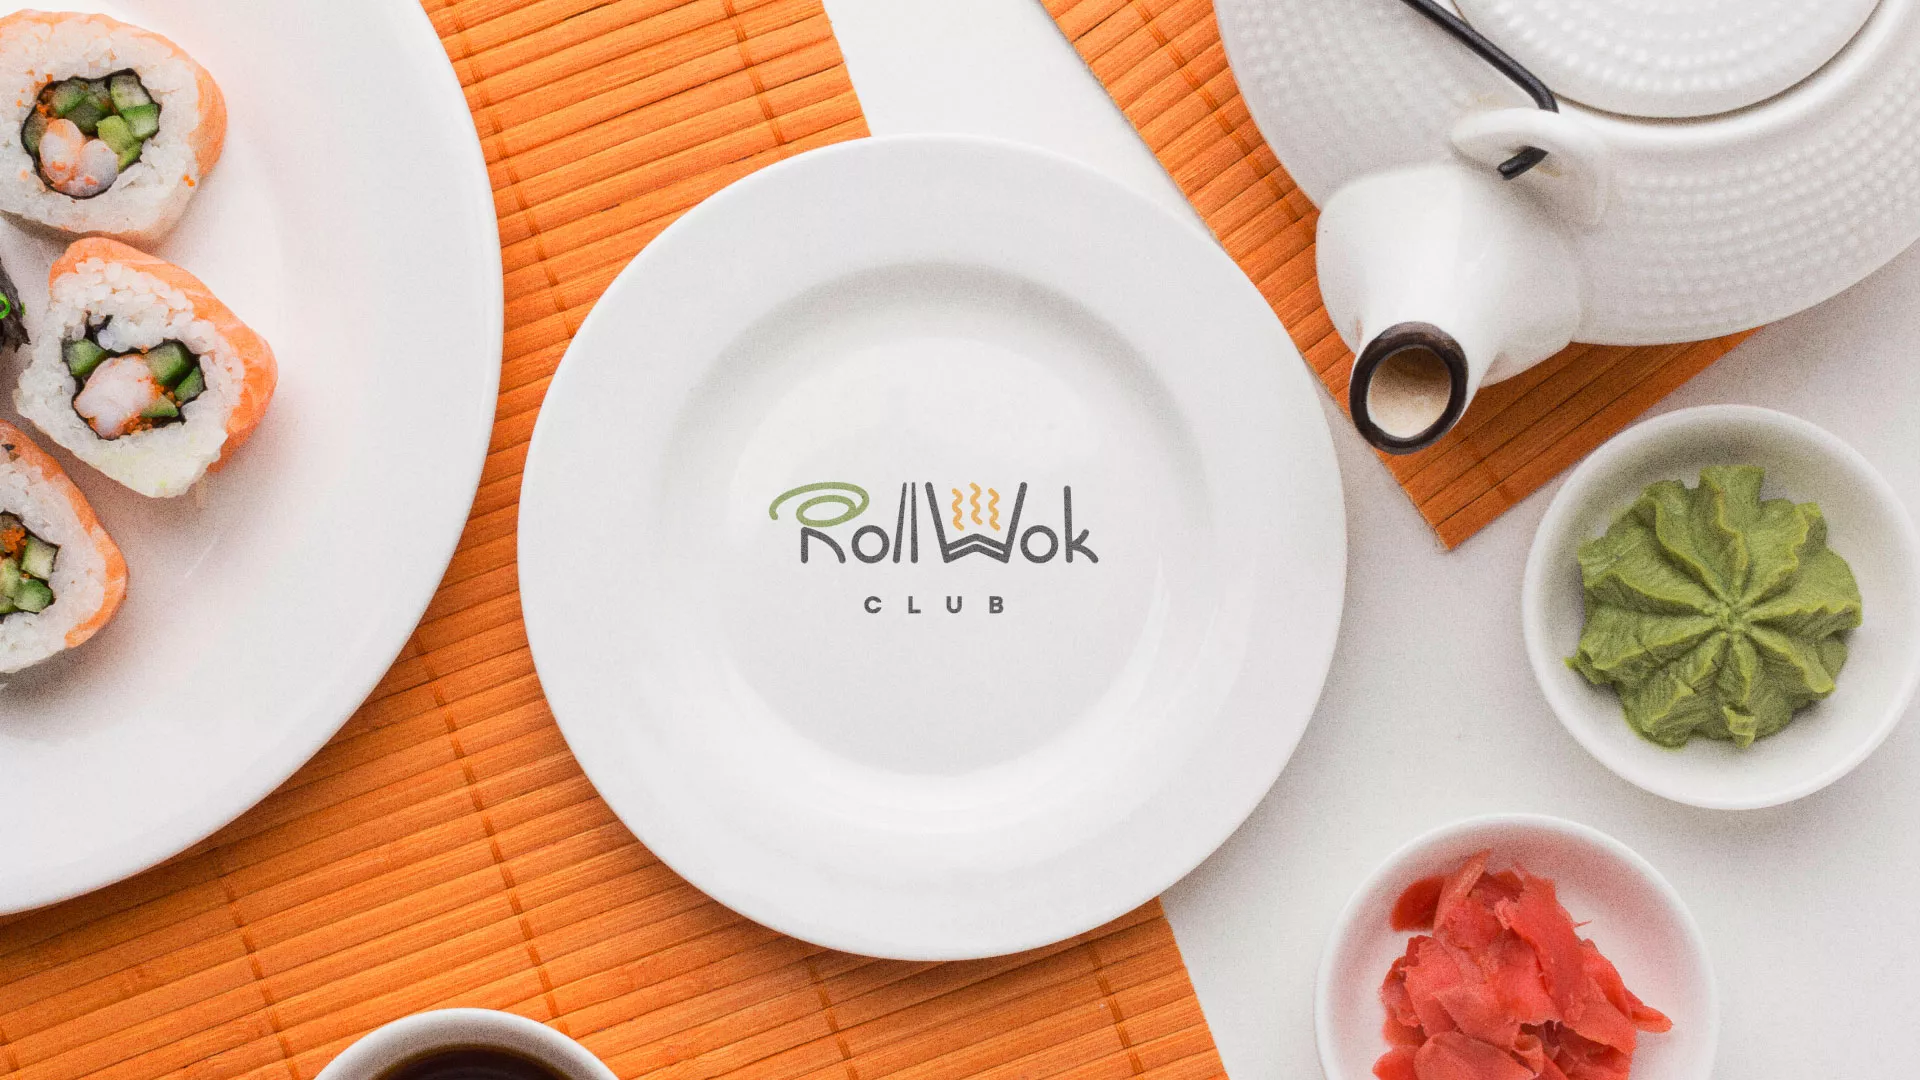 Разработка логотипа и фирменного стиля суши-бара «Roll Wok Club» в Назарово